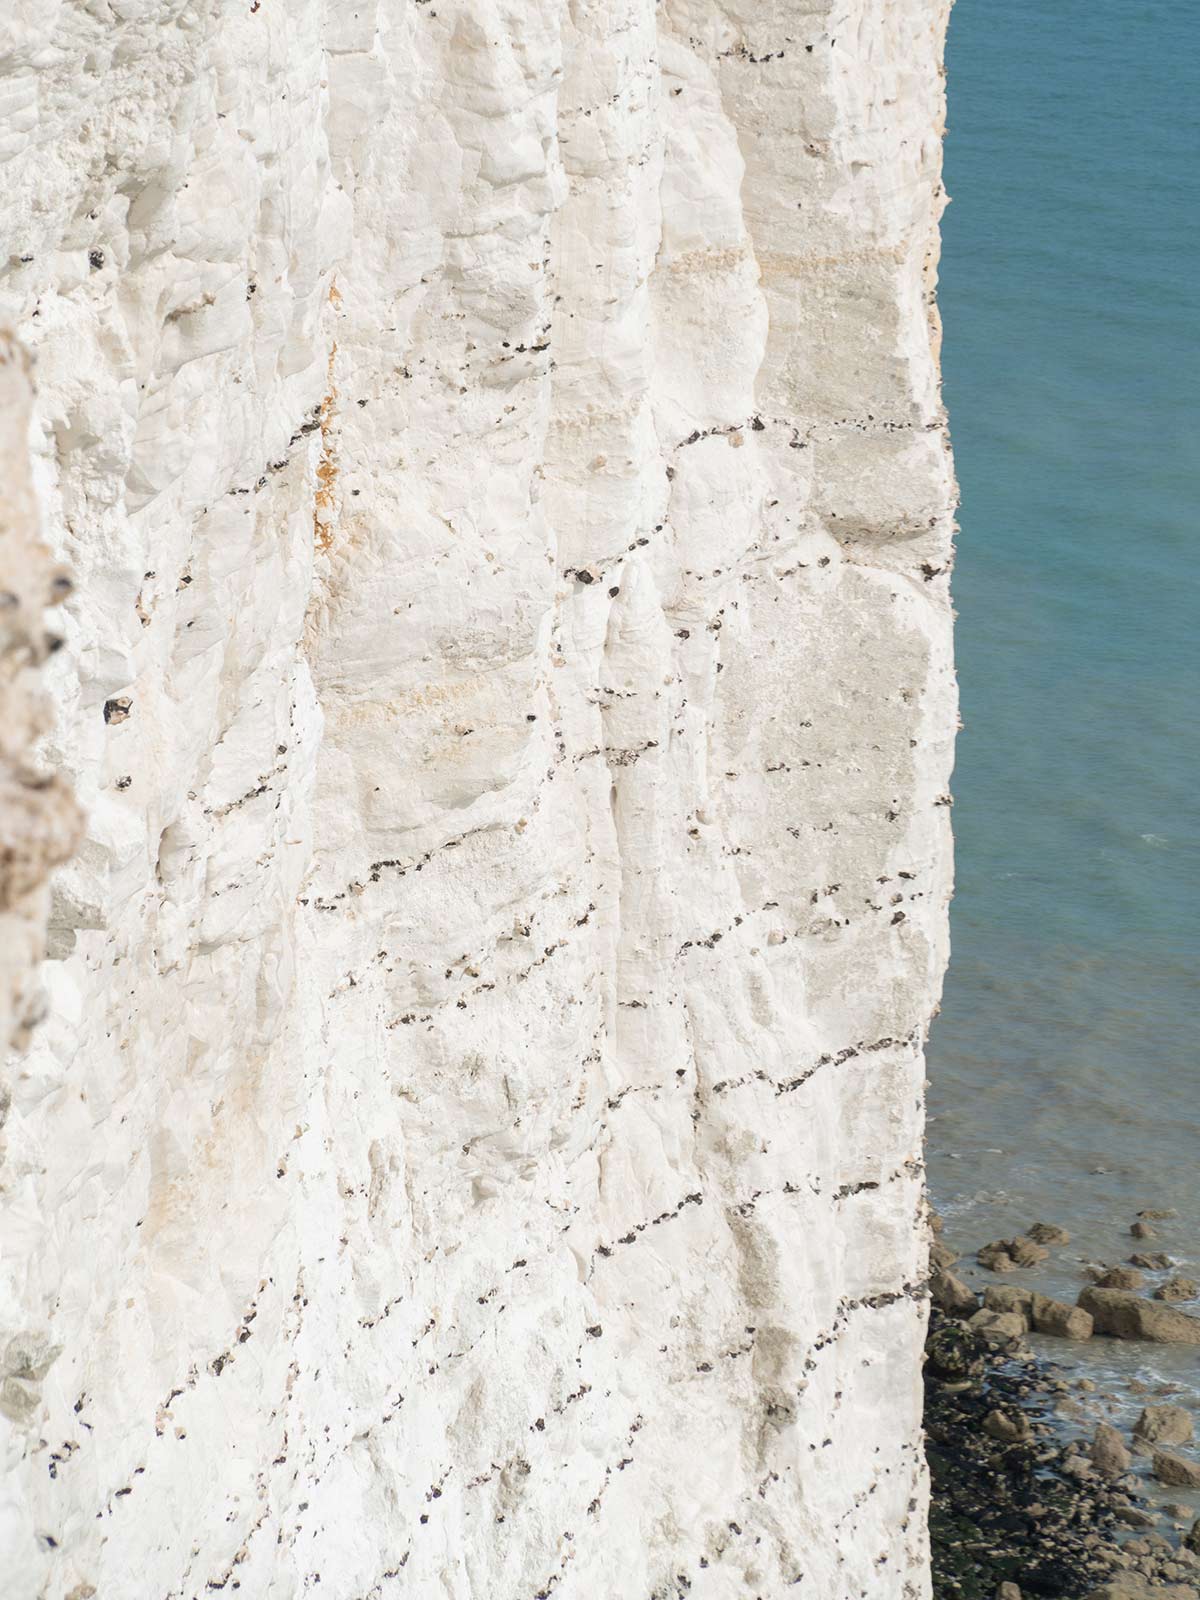 Falaises des Seven Sisters, East Sussex, Angleterre, Royaume-Uni / Seven Sisters cliffs, East Sussex, England, UK